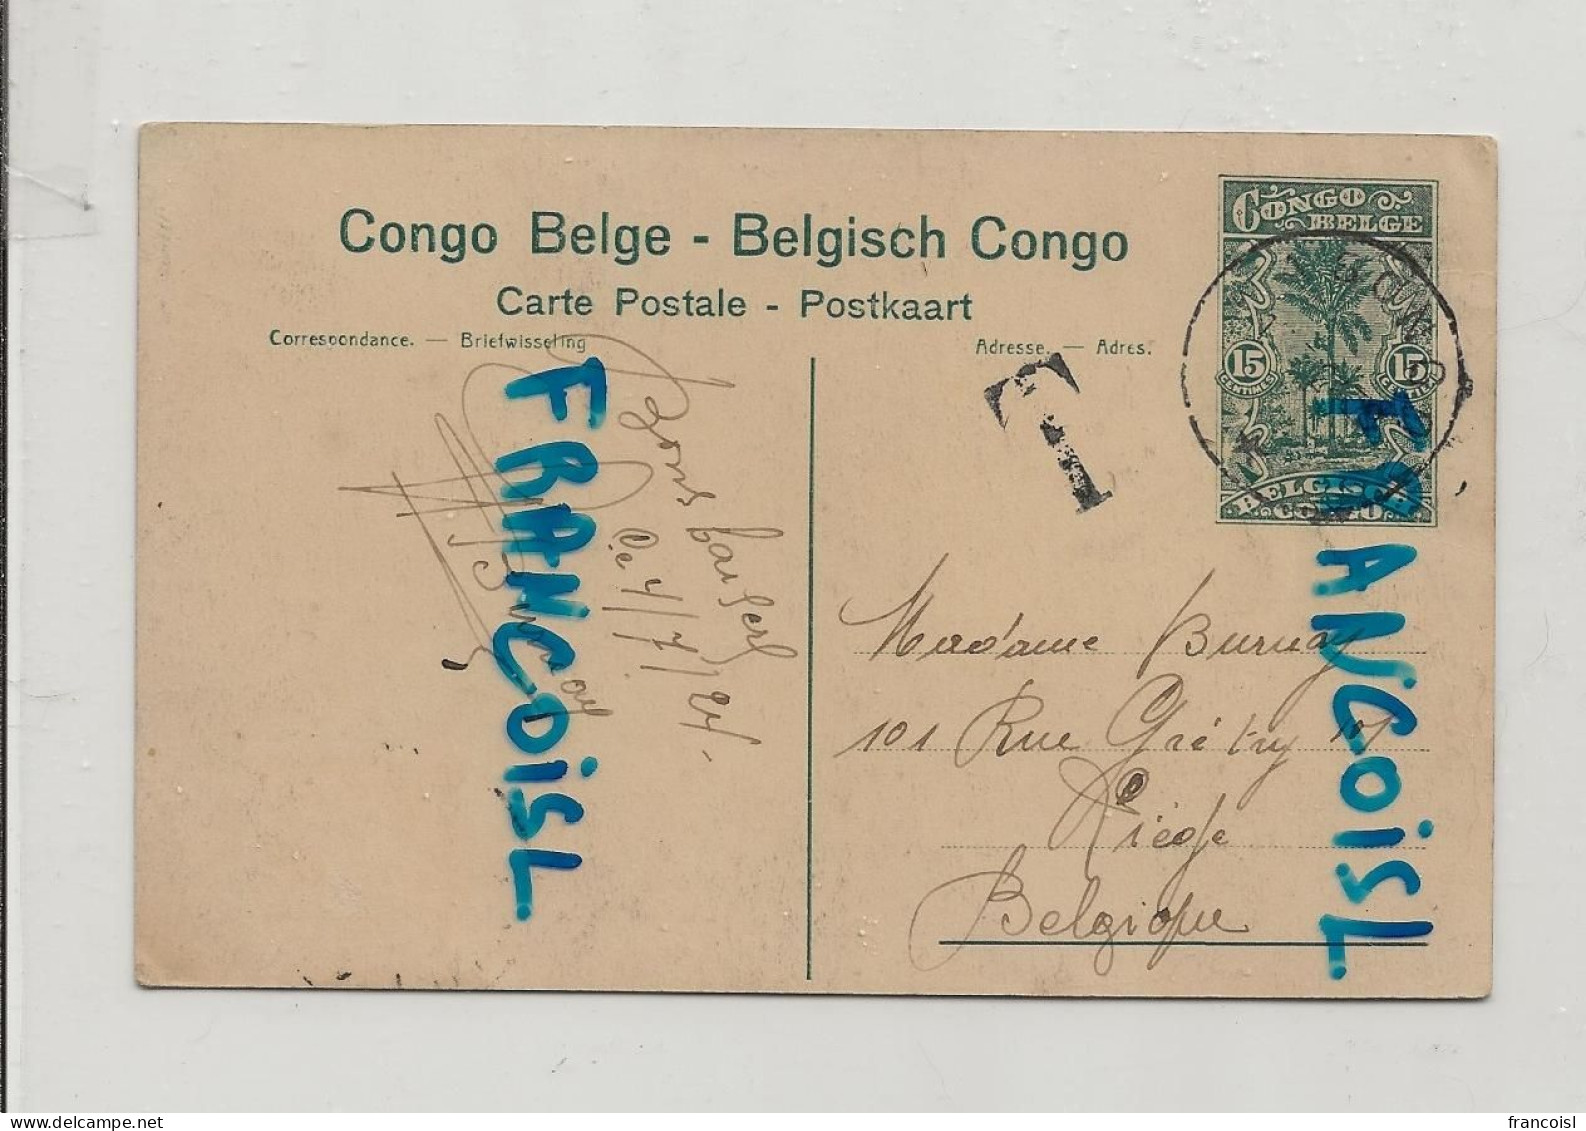 Congo Belge. Elisabethville. L'Oeuvre De La Goutte De Lait Chez Les Soeurs. 1924 - Congo Belge